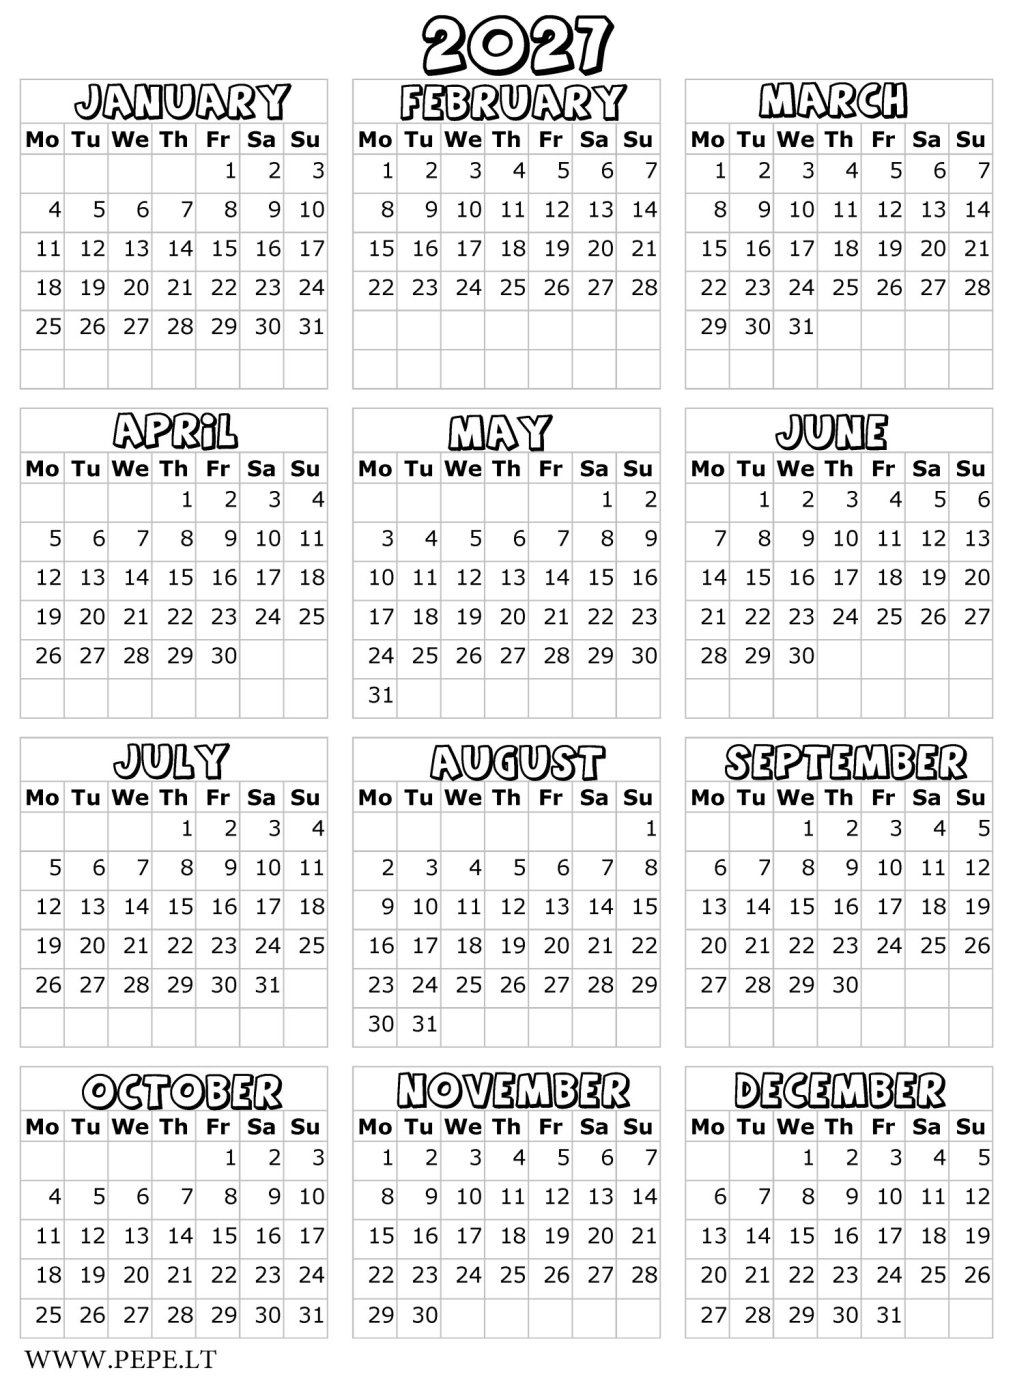 Easy calendar for 2027